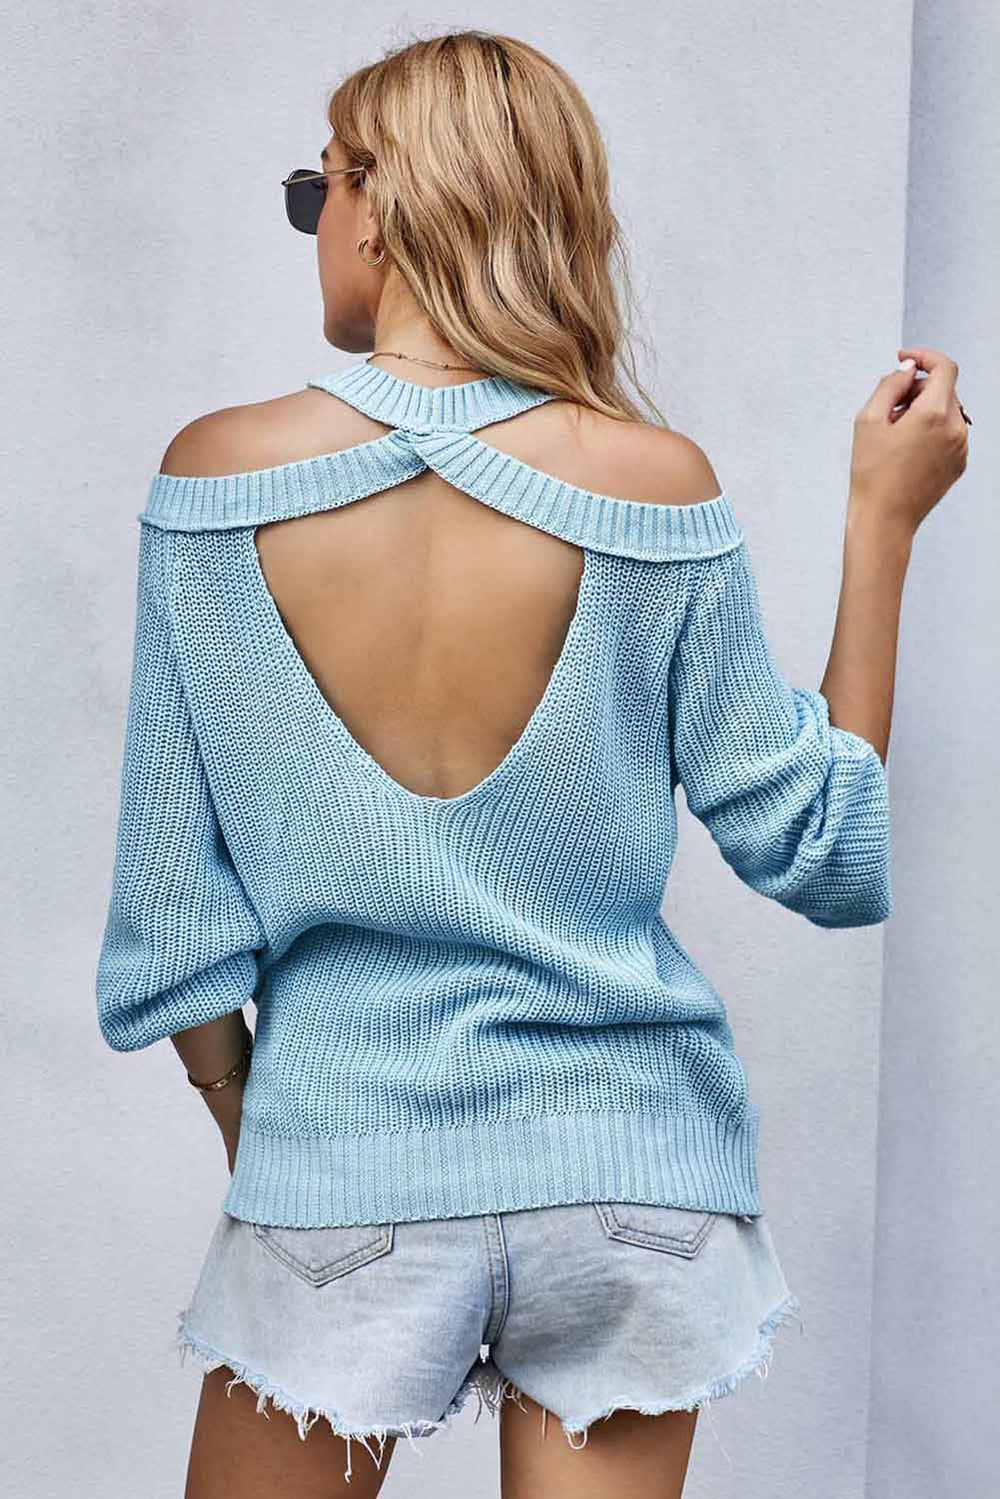 Women's Sky Blue Cool Breeze Cotton Cold Shoulder Sweater